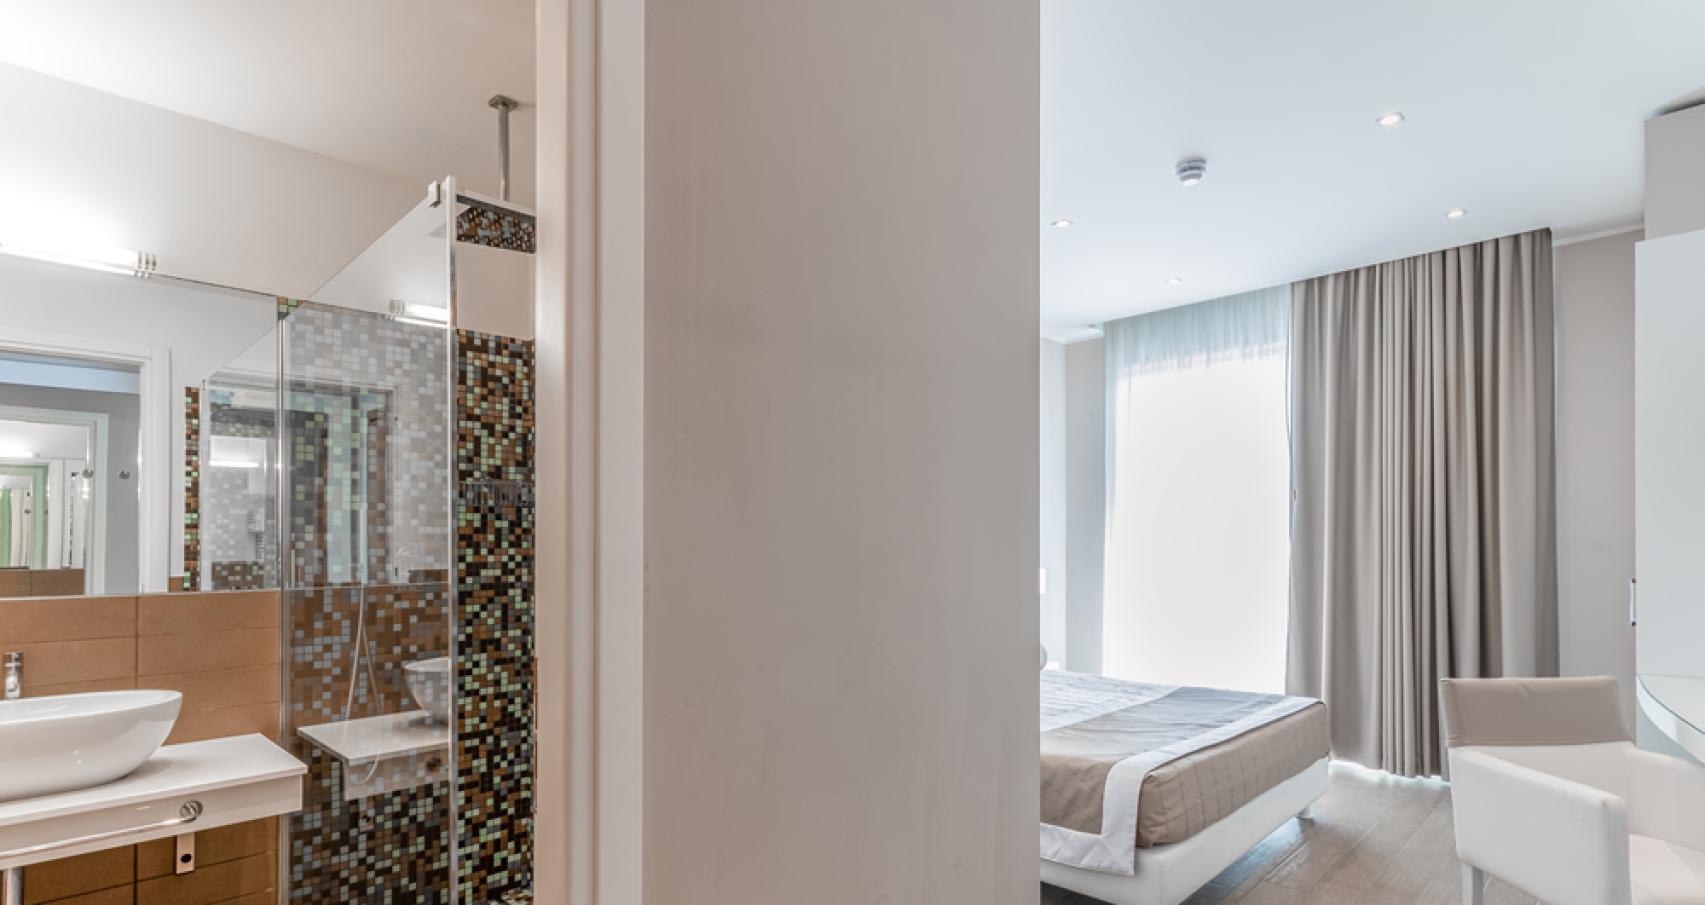 Bagno moderno con mosaico, lavabo elegante e asciugamani bianchi.